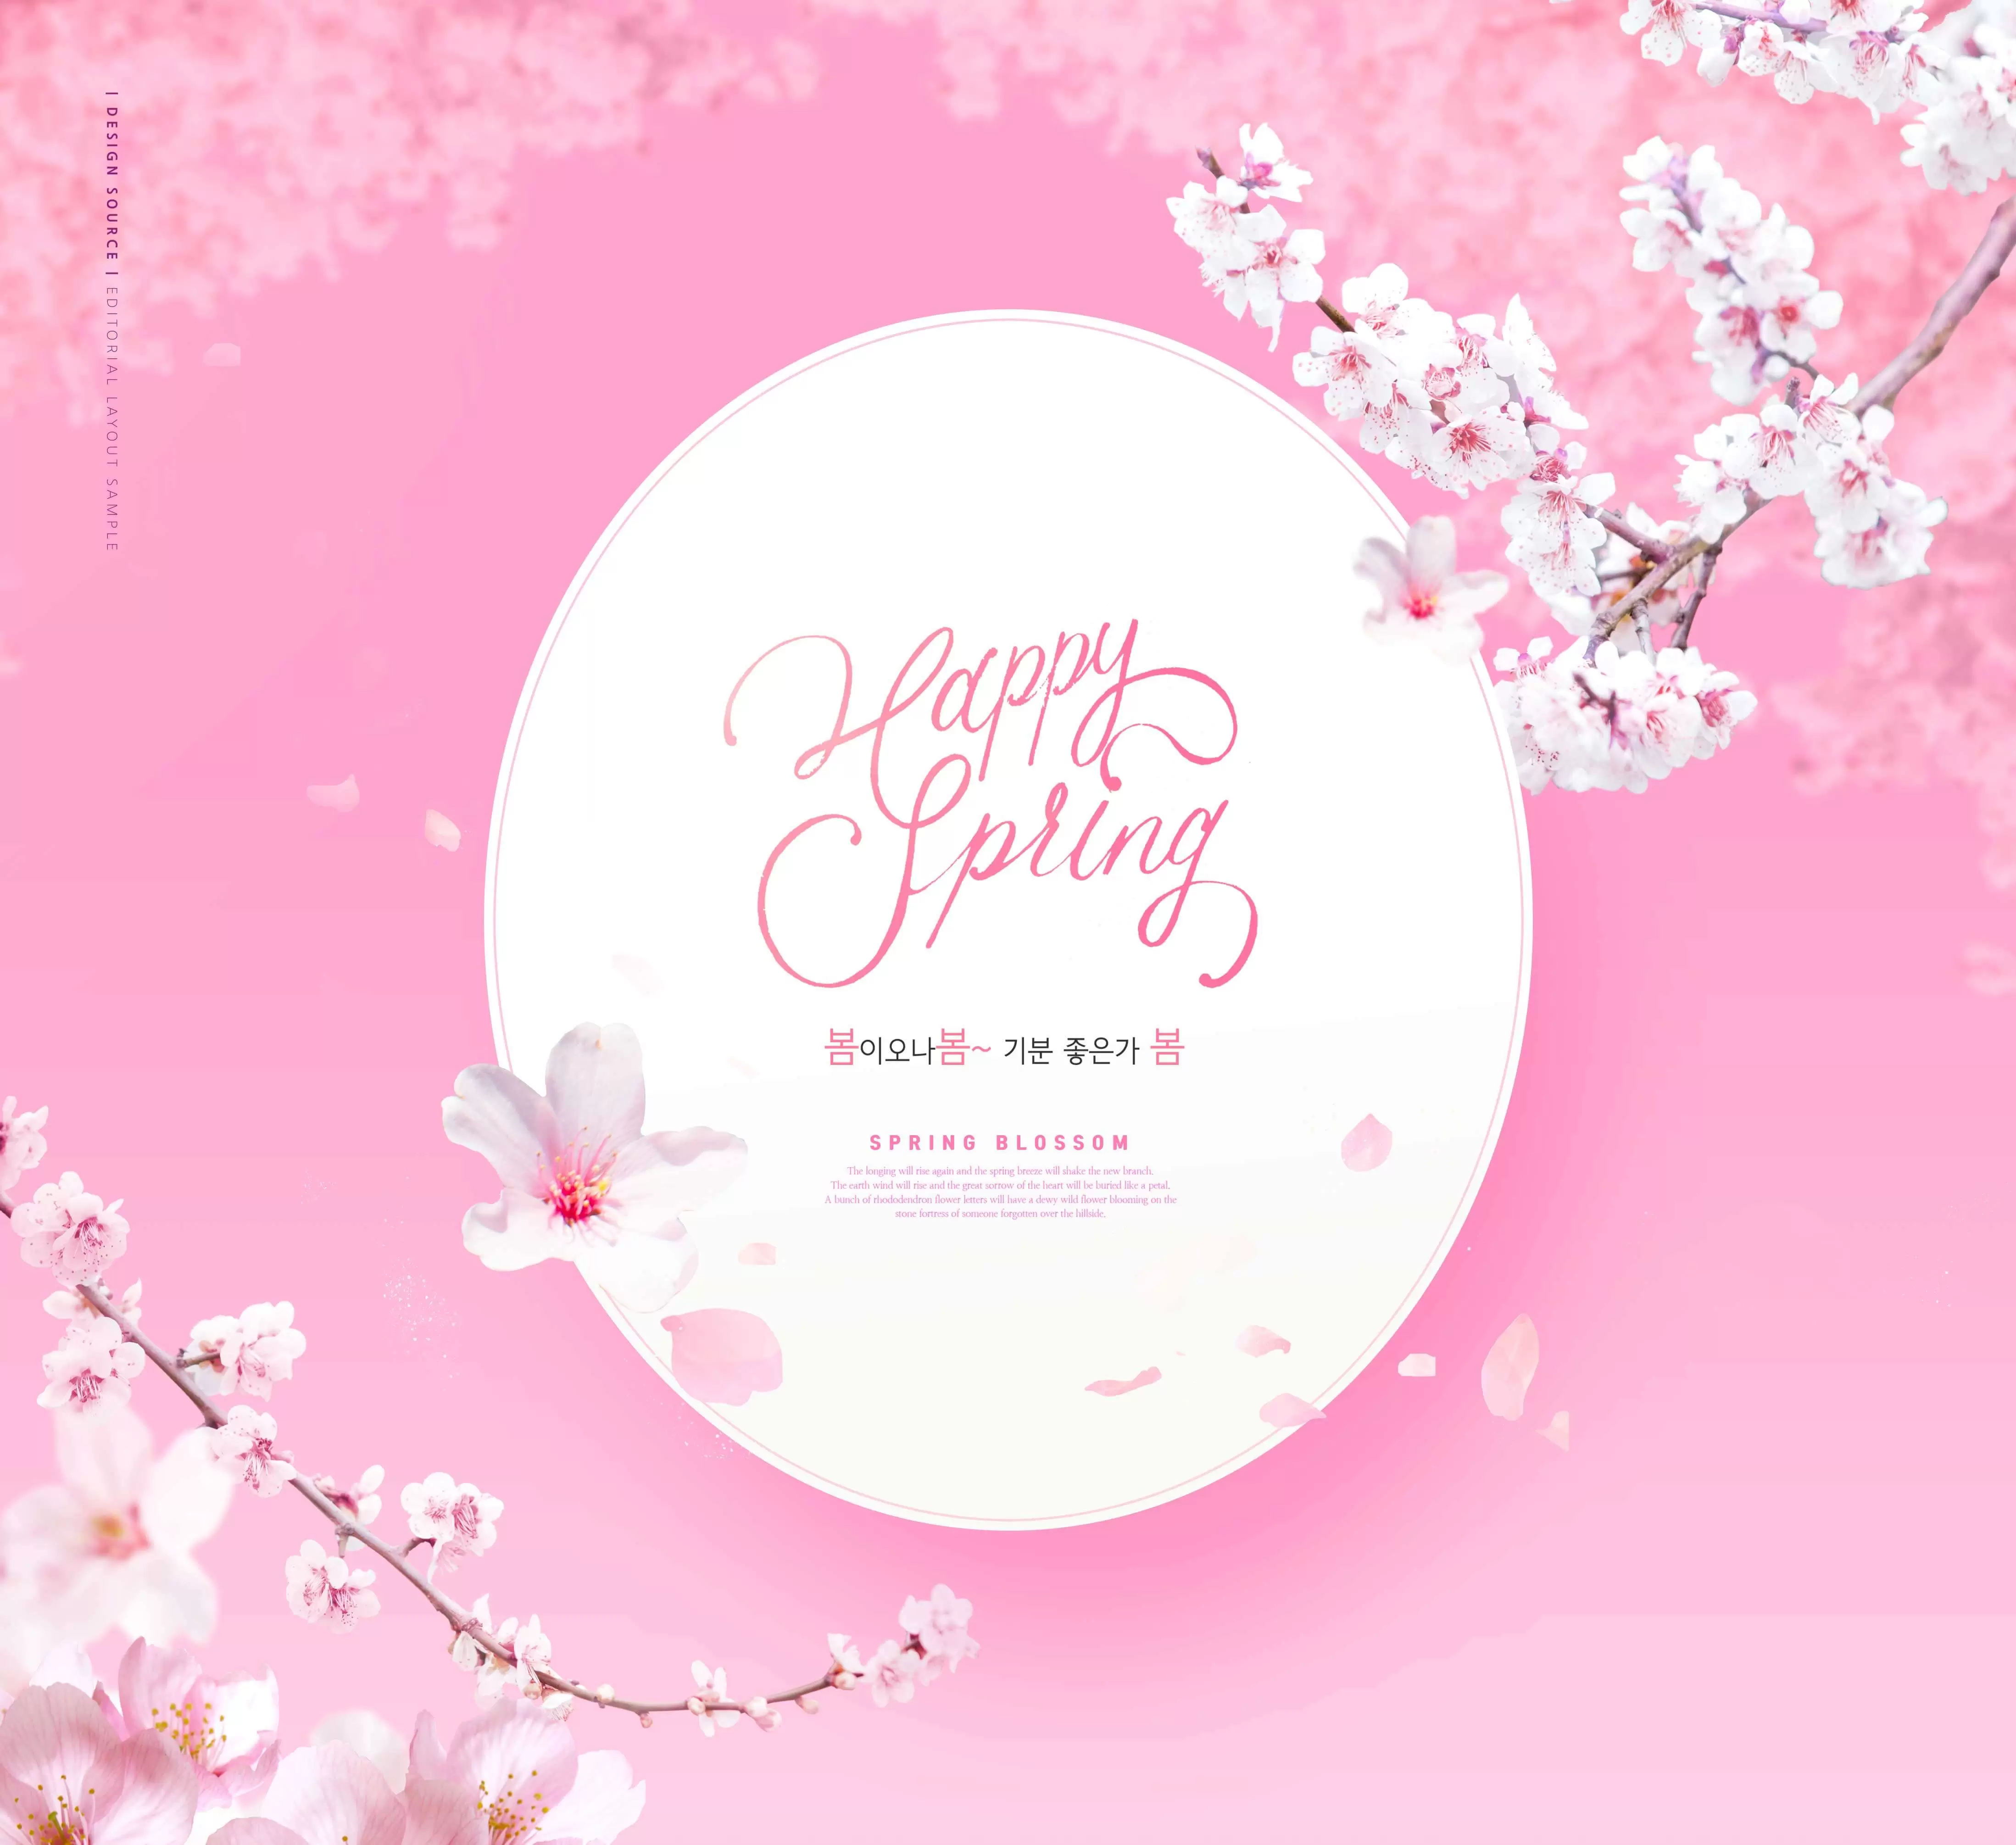 粉色春天主题海报设计素材 (psd)插图